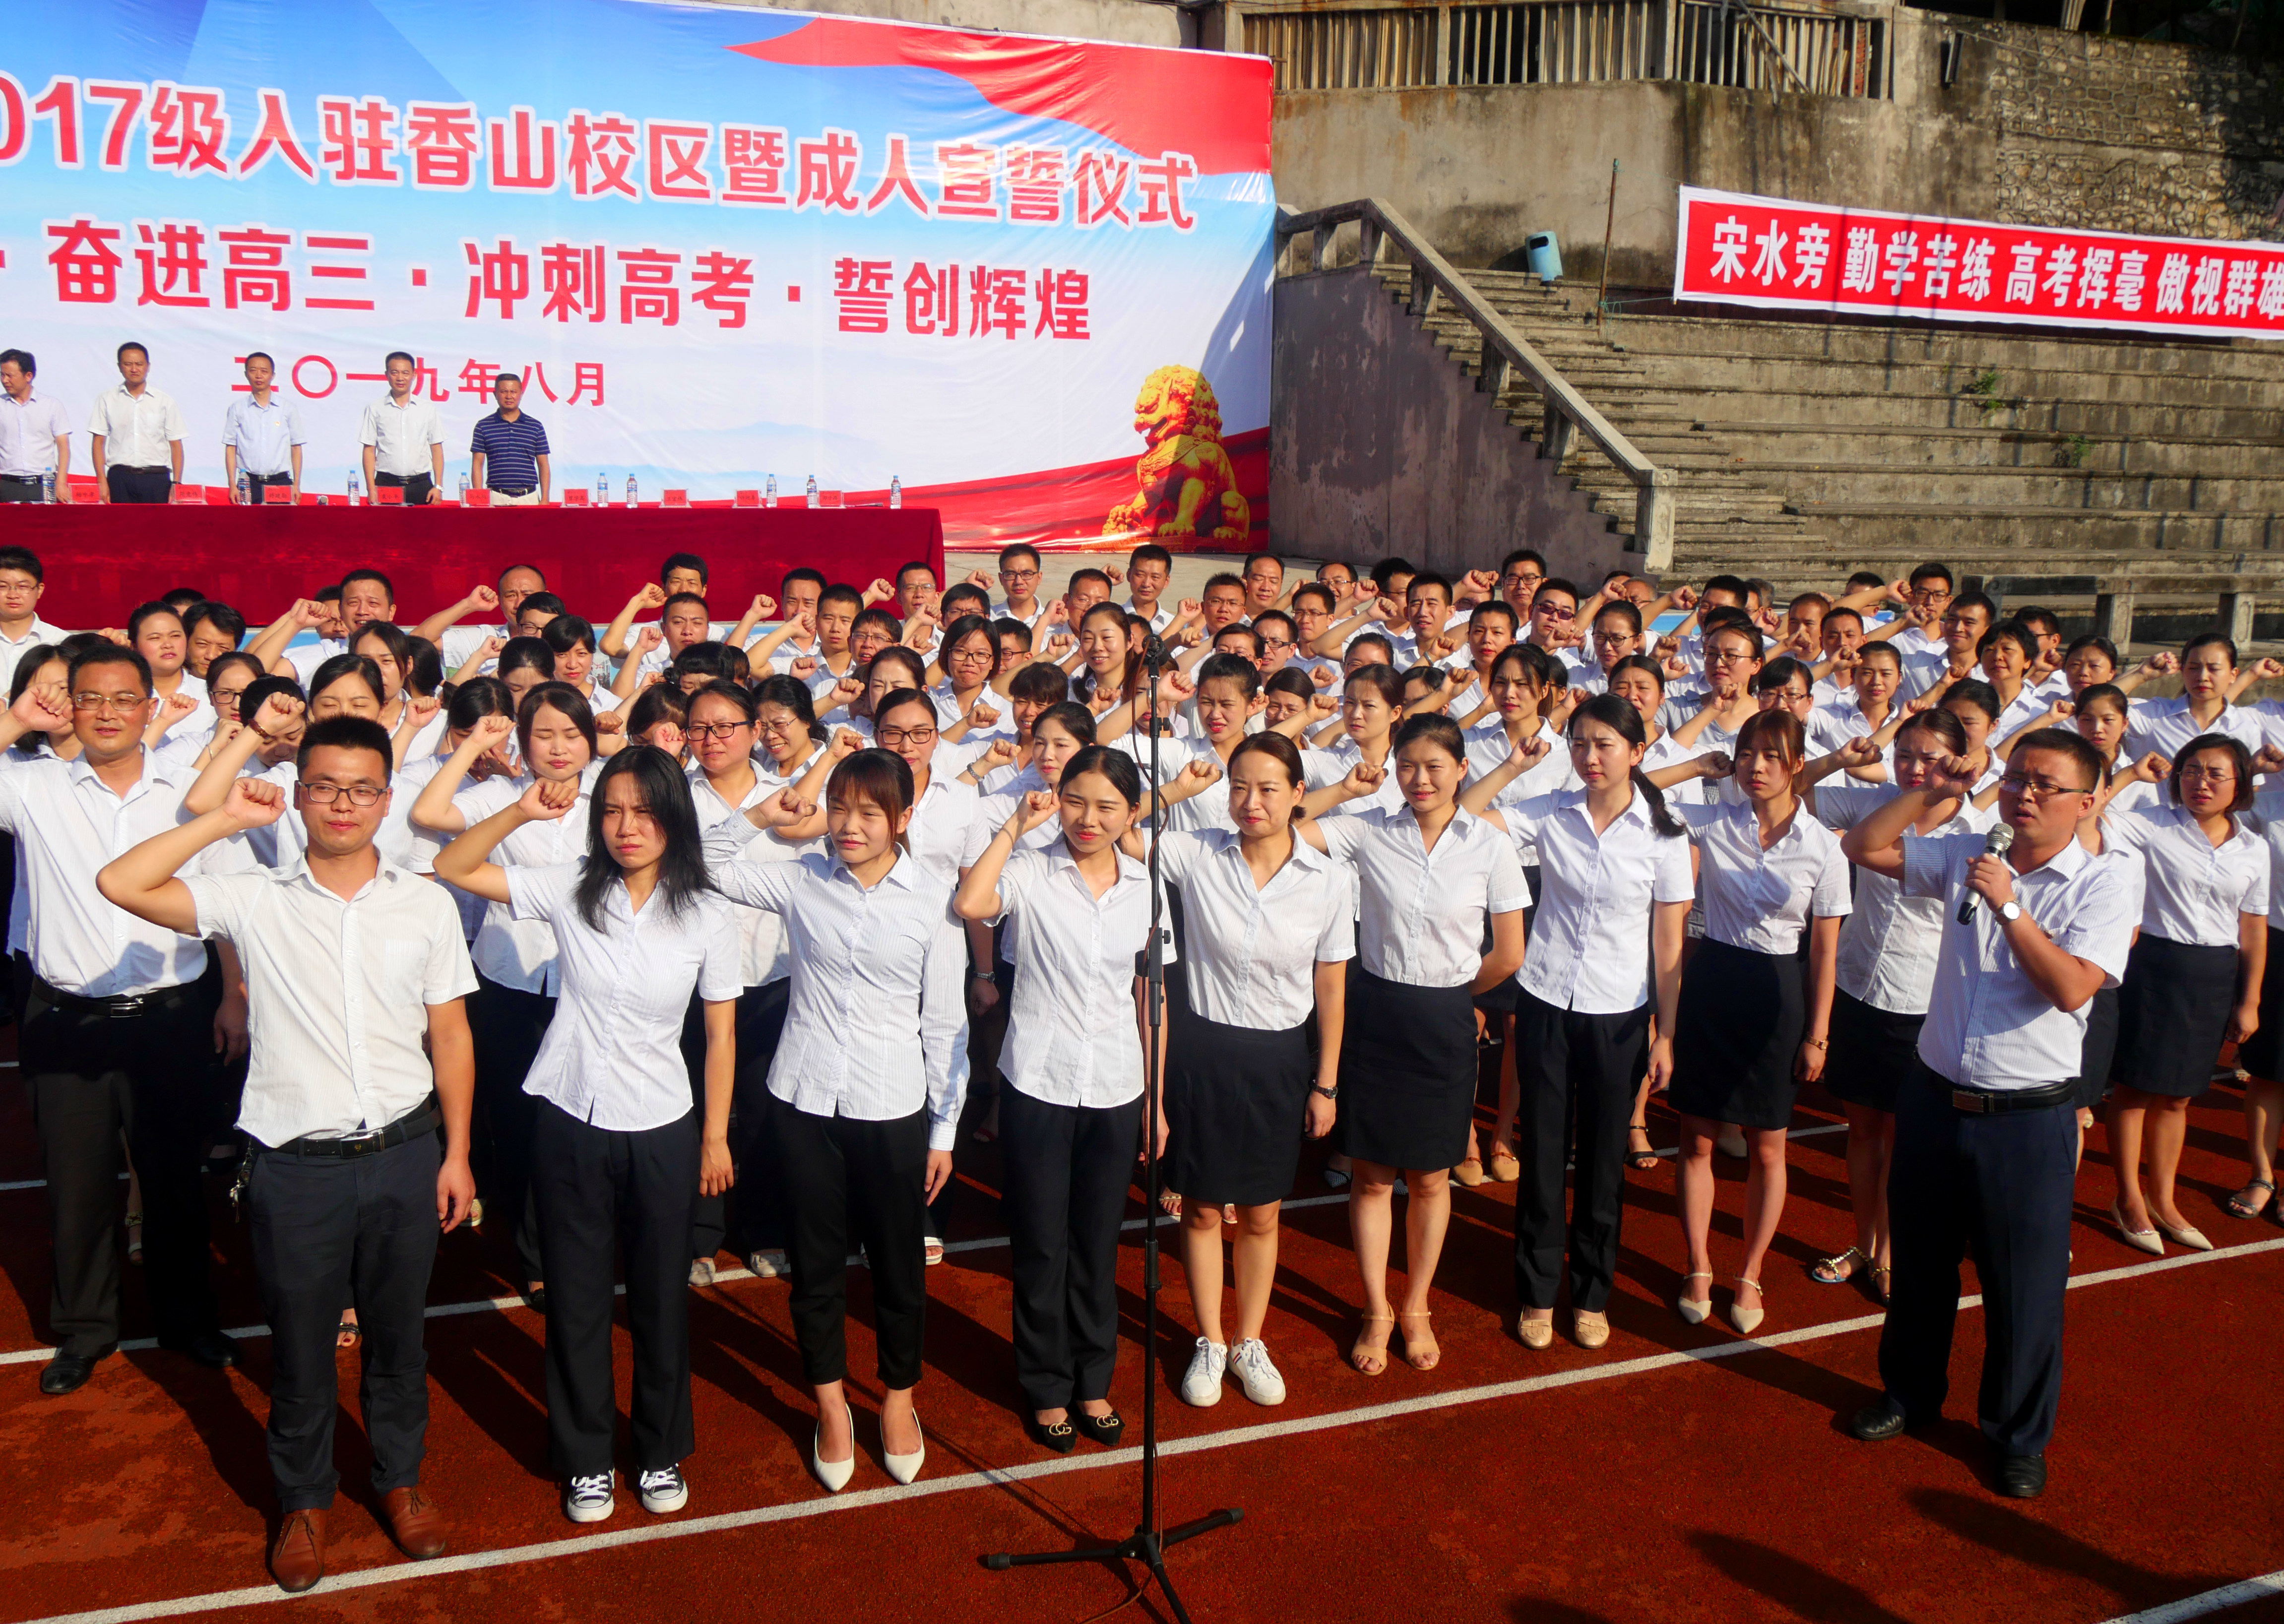 兴文二中举行高2017级入驻香山校区暨成人宣誓仪式